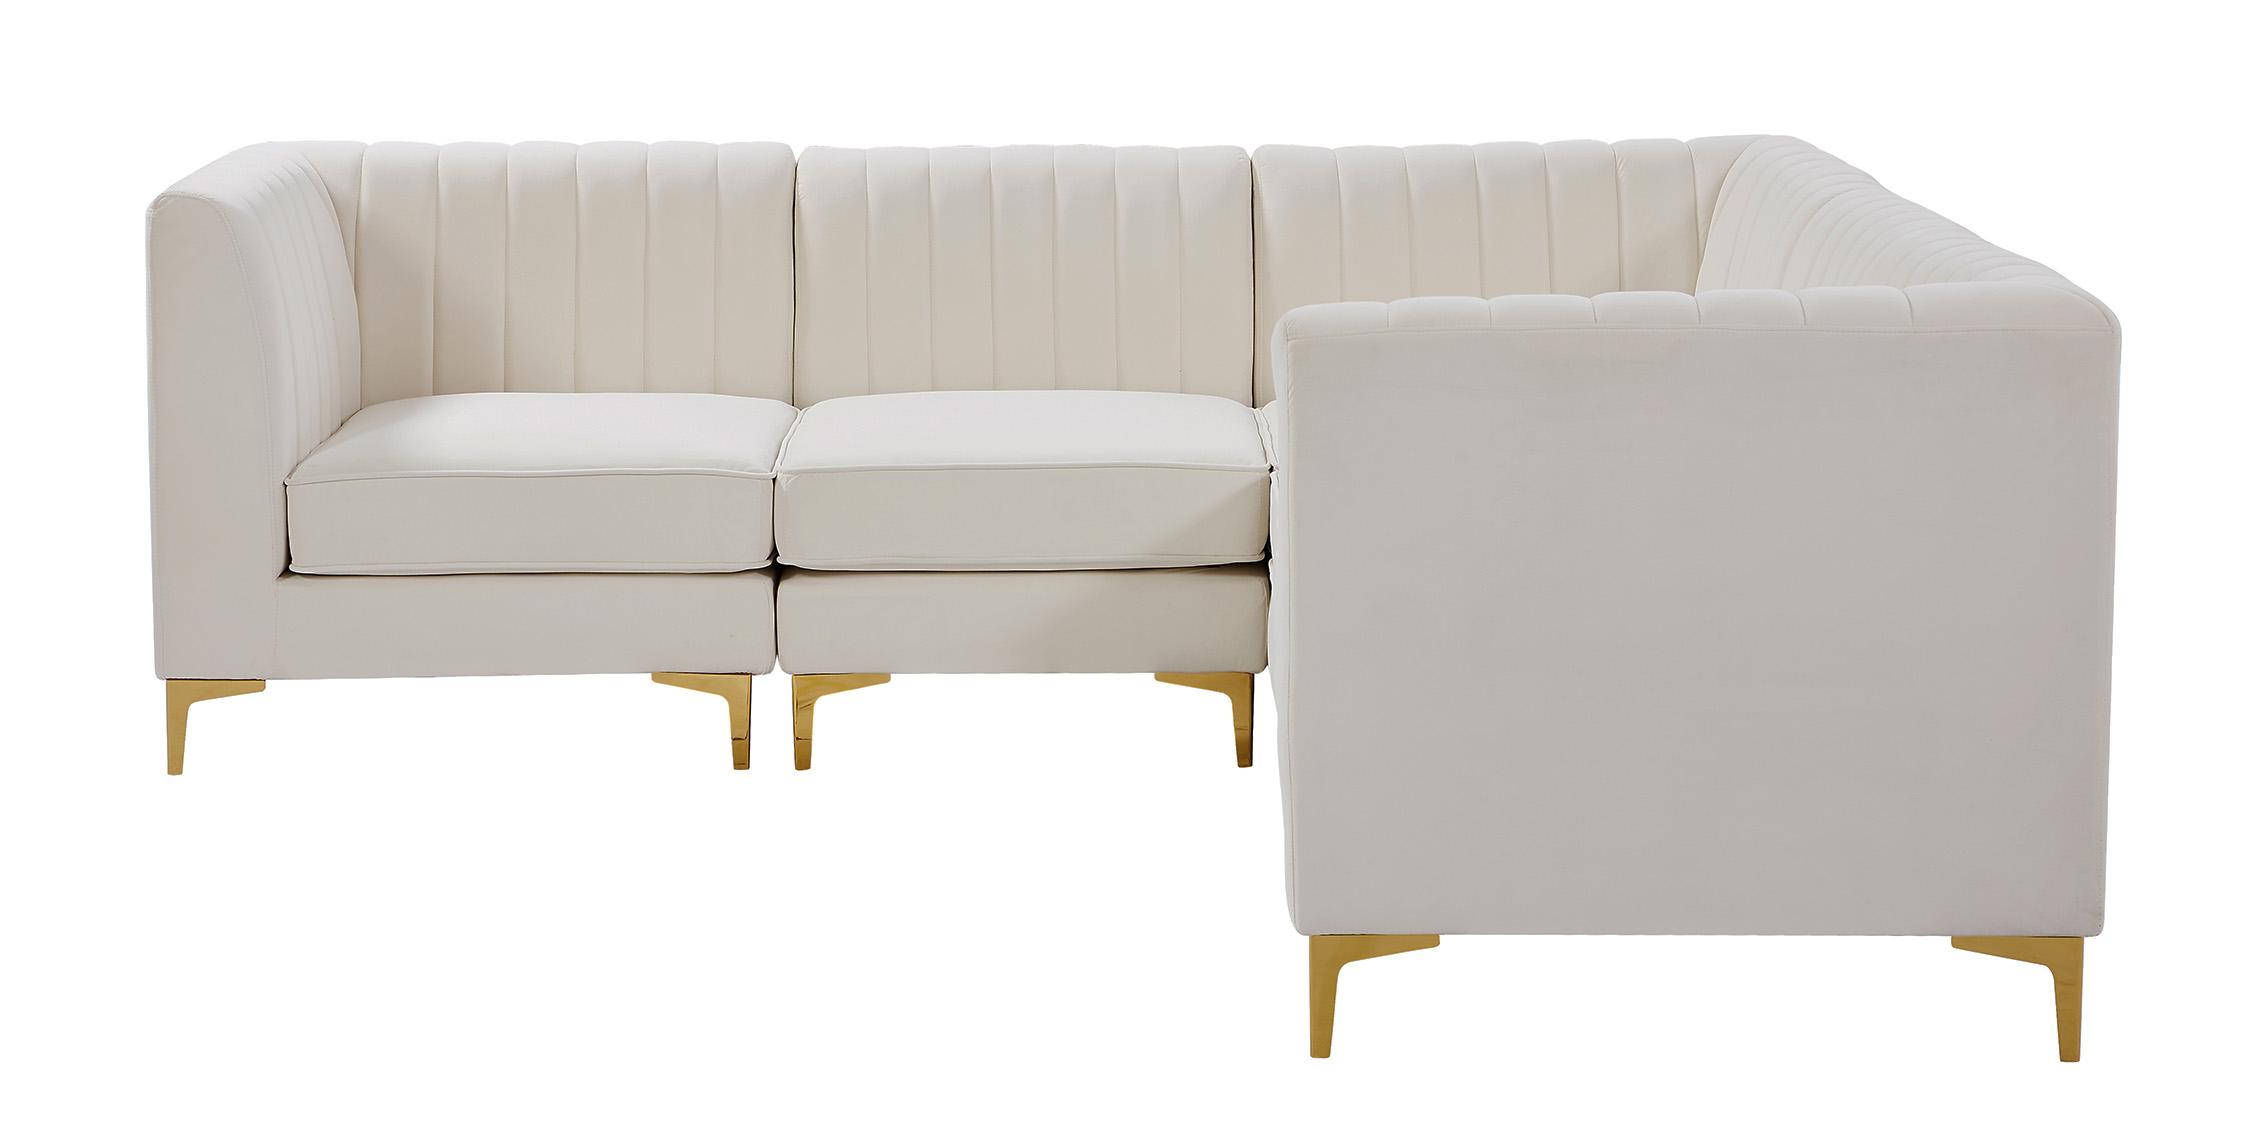 

    
Meridian Furniture ALINA 604Cream-Sec5C Modular Sectional Sofa Cream 604Cream-Sec5C
